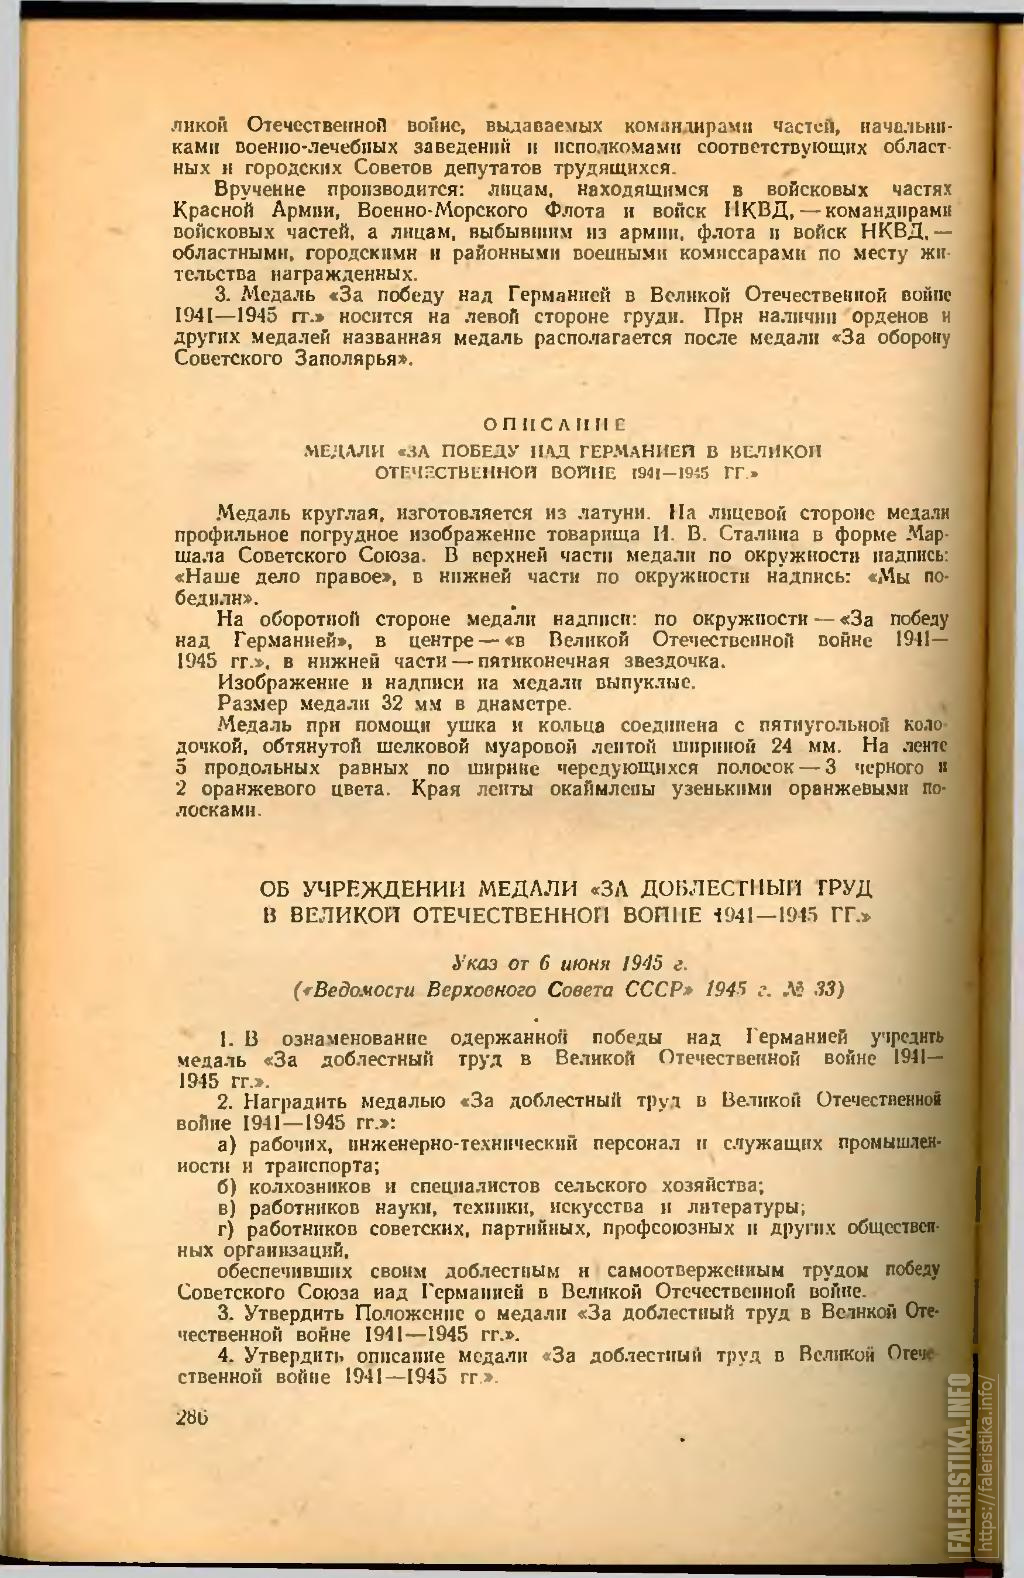 Sbornikzakonov1938-1956djvu_1.jpg